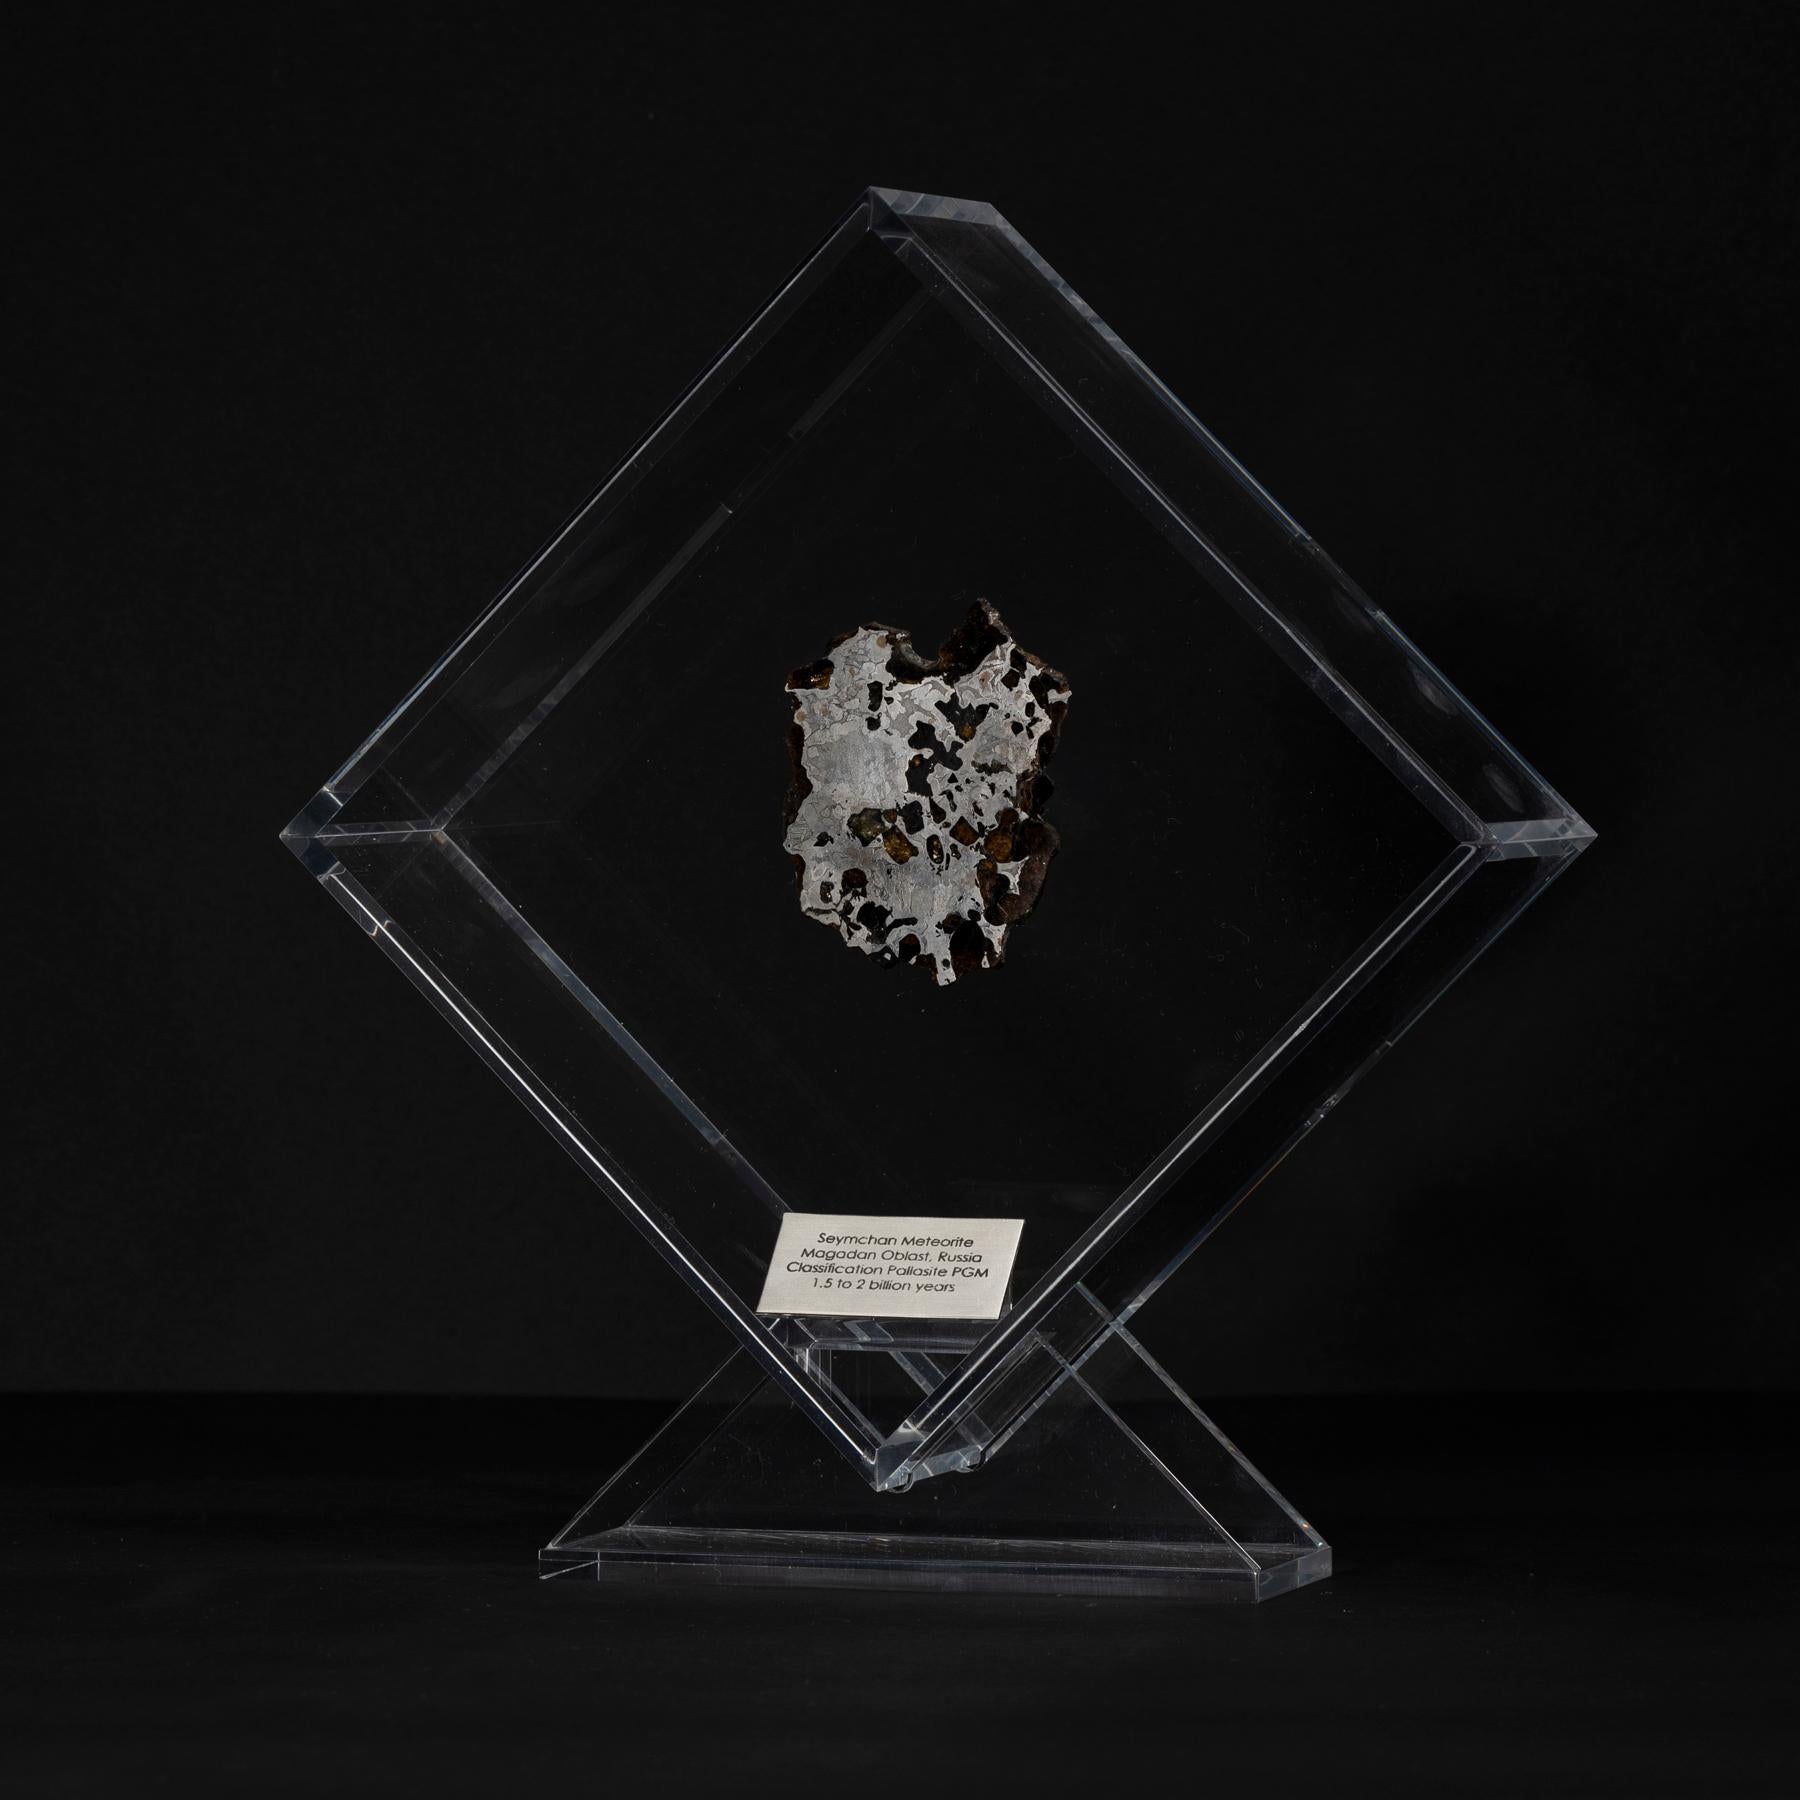 Design/One original dans un présentoir en acrylique avec un aimant donnant l'impression que la météorite flotte comme elle l'a fait dans l'espace pendant des années avant sa dernière visite sur Terre. 
Seymchan avec météorite à olivine 
Origine :